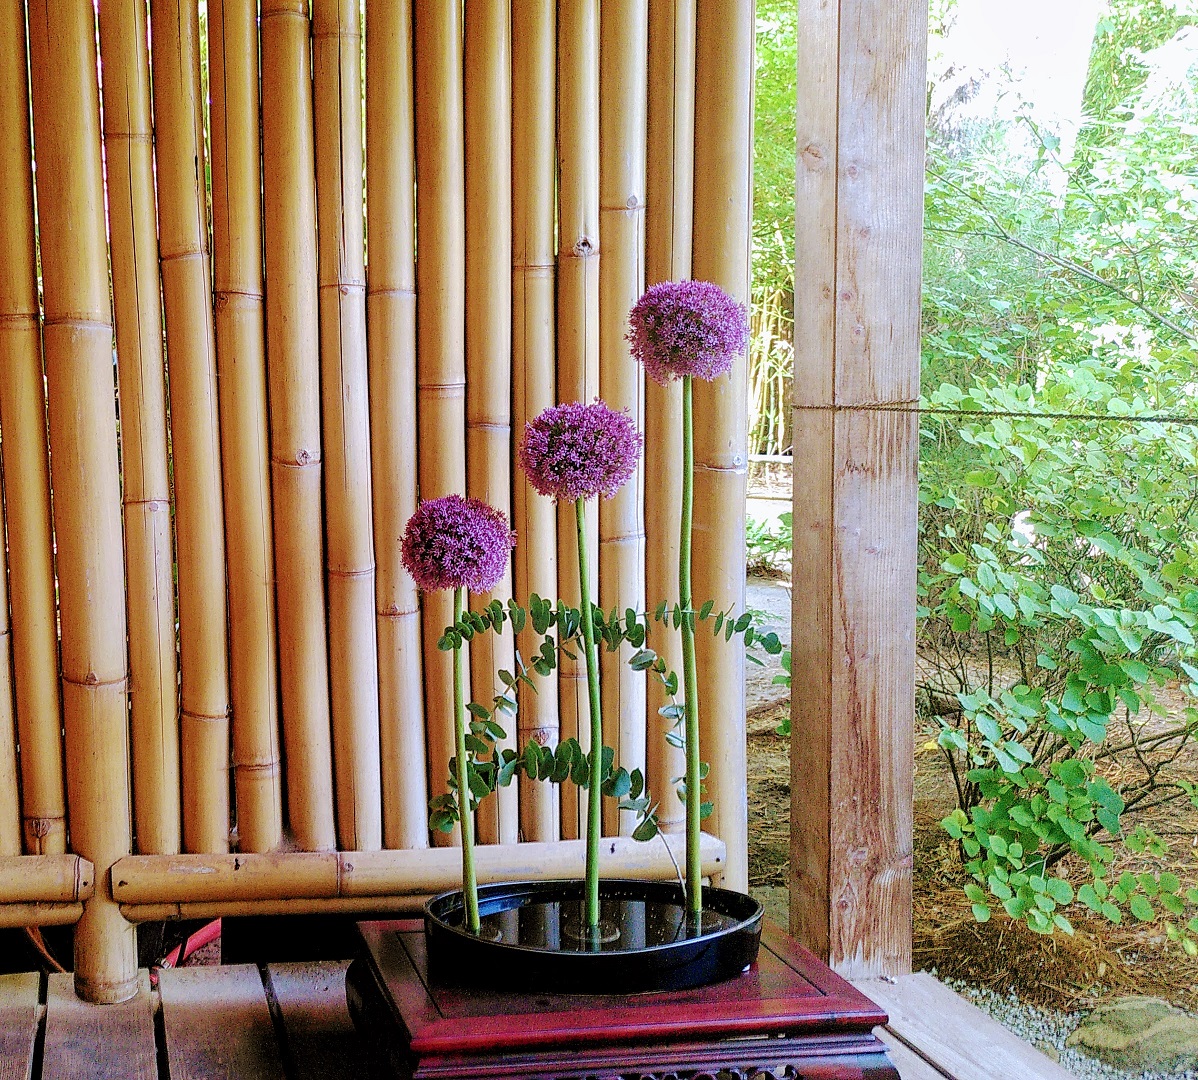 Blumengesteck mit drei violetten Blüten vor einem Bambuszaun.